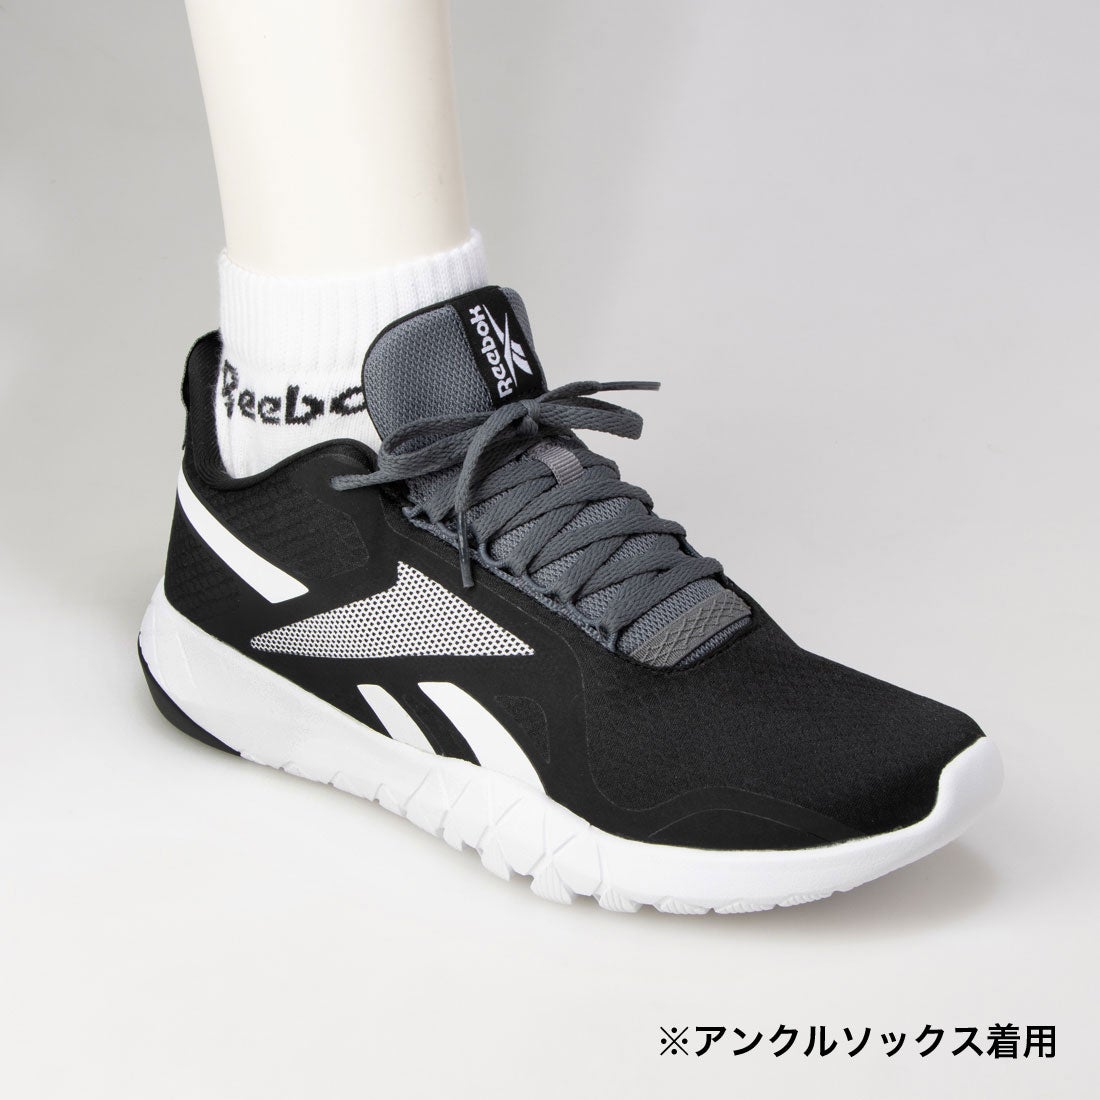 フレクサゴン フォース Flexagon Force Shoes （コアブラック） -Reebok 公式オンラインショップ